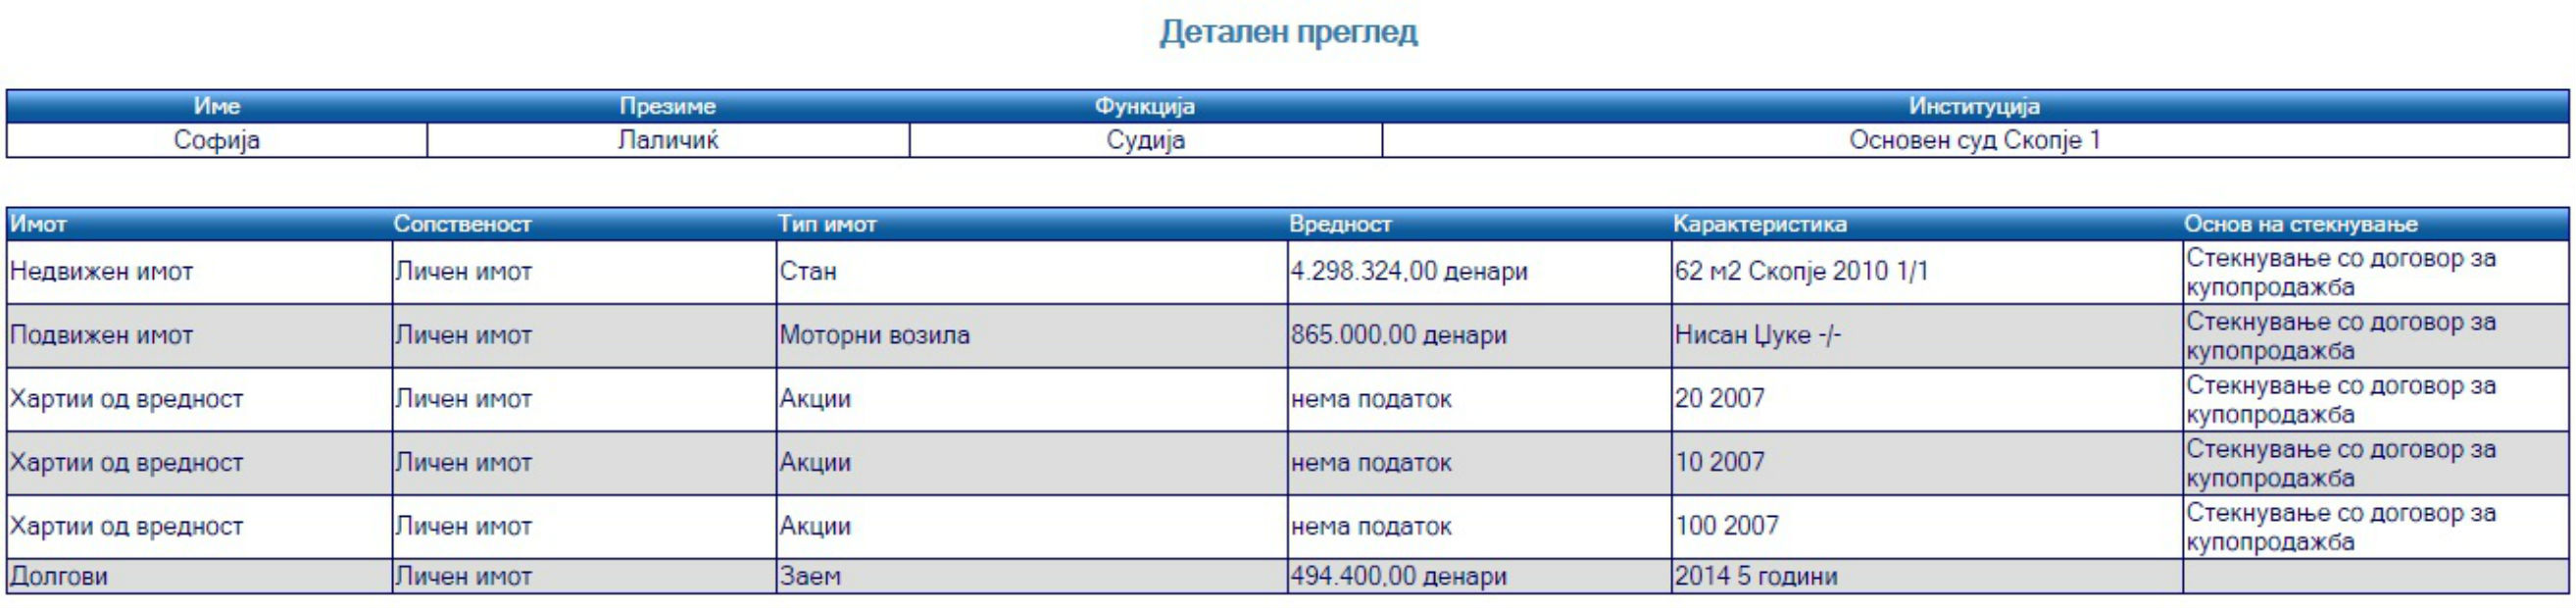 Според податоците објавени на веб-страната на Антикорупциската комисија, Лаличиќ на 23 годишна возраст купила акции, но не ја навела сумата во својот анкетен лист